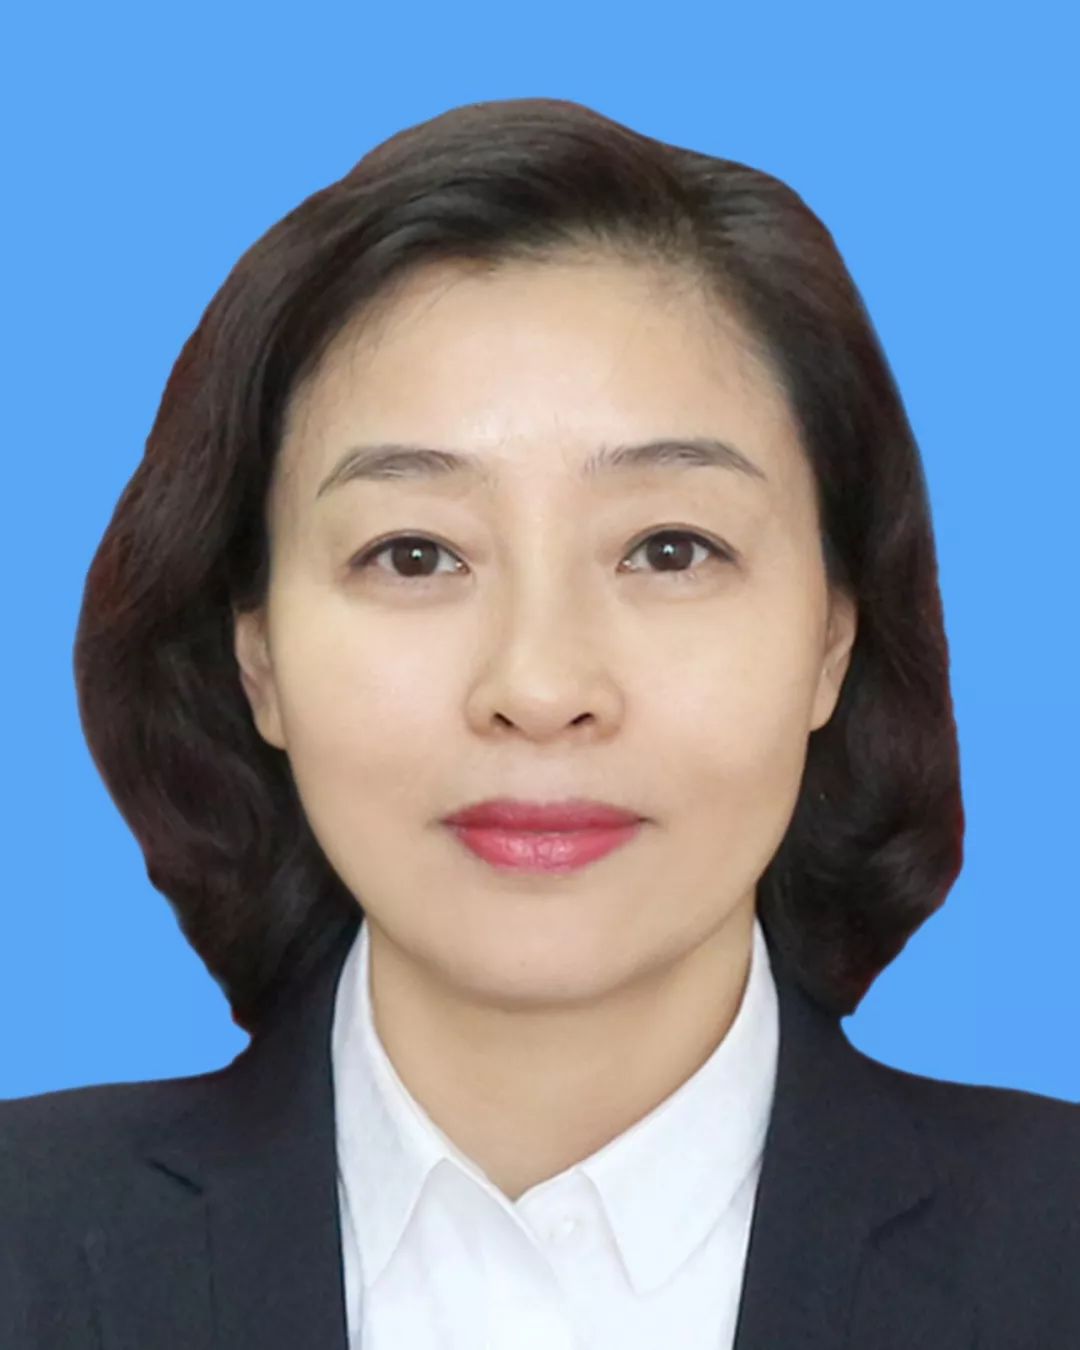 李红波,女,1971年5月出生,大专学历